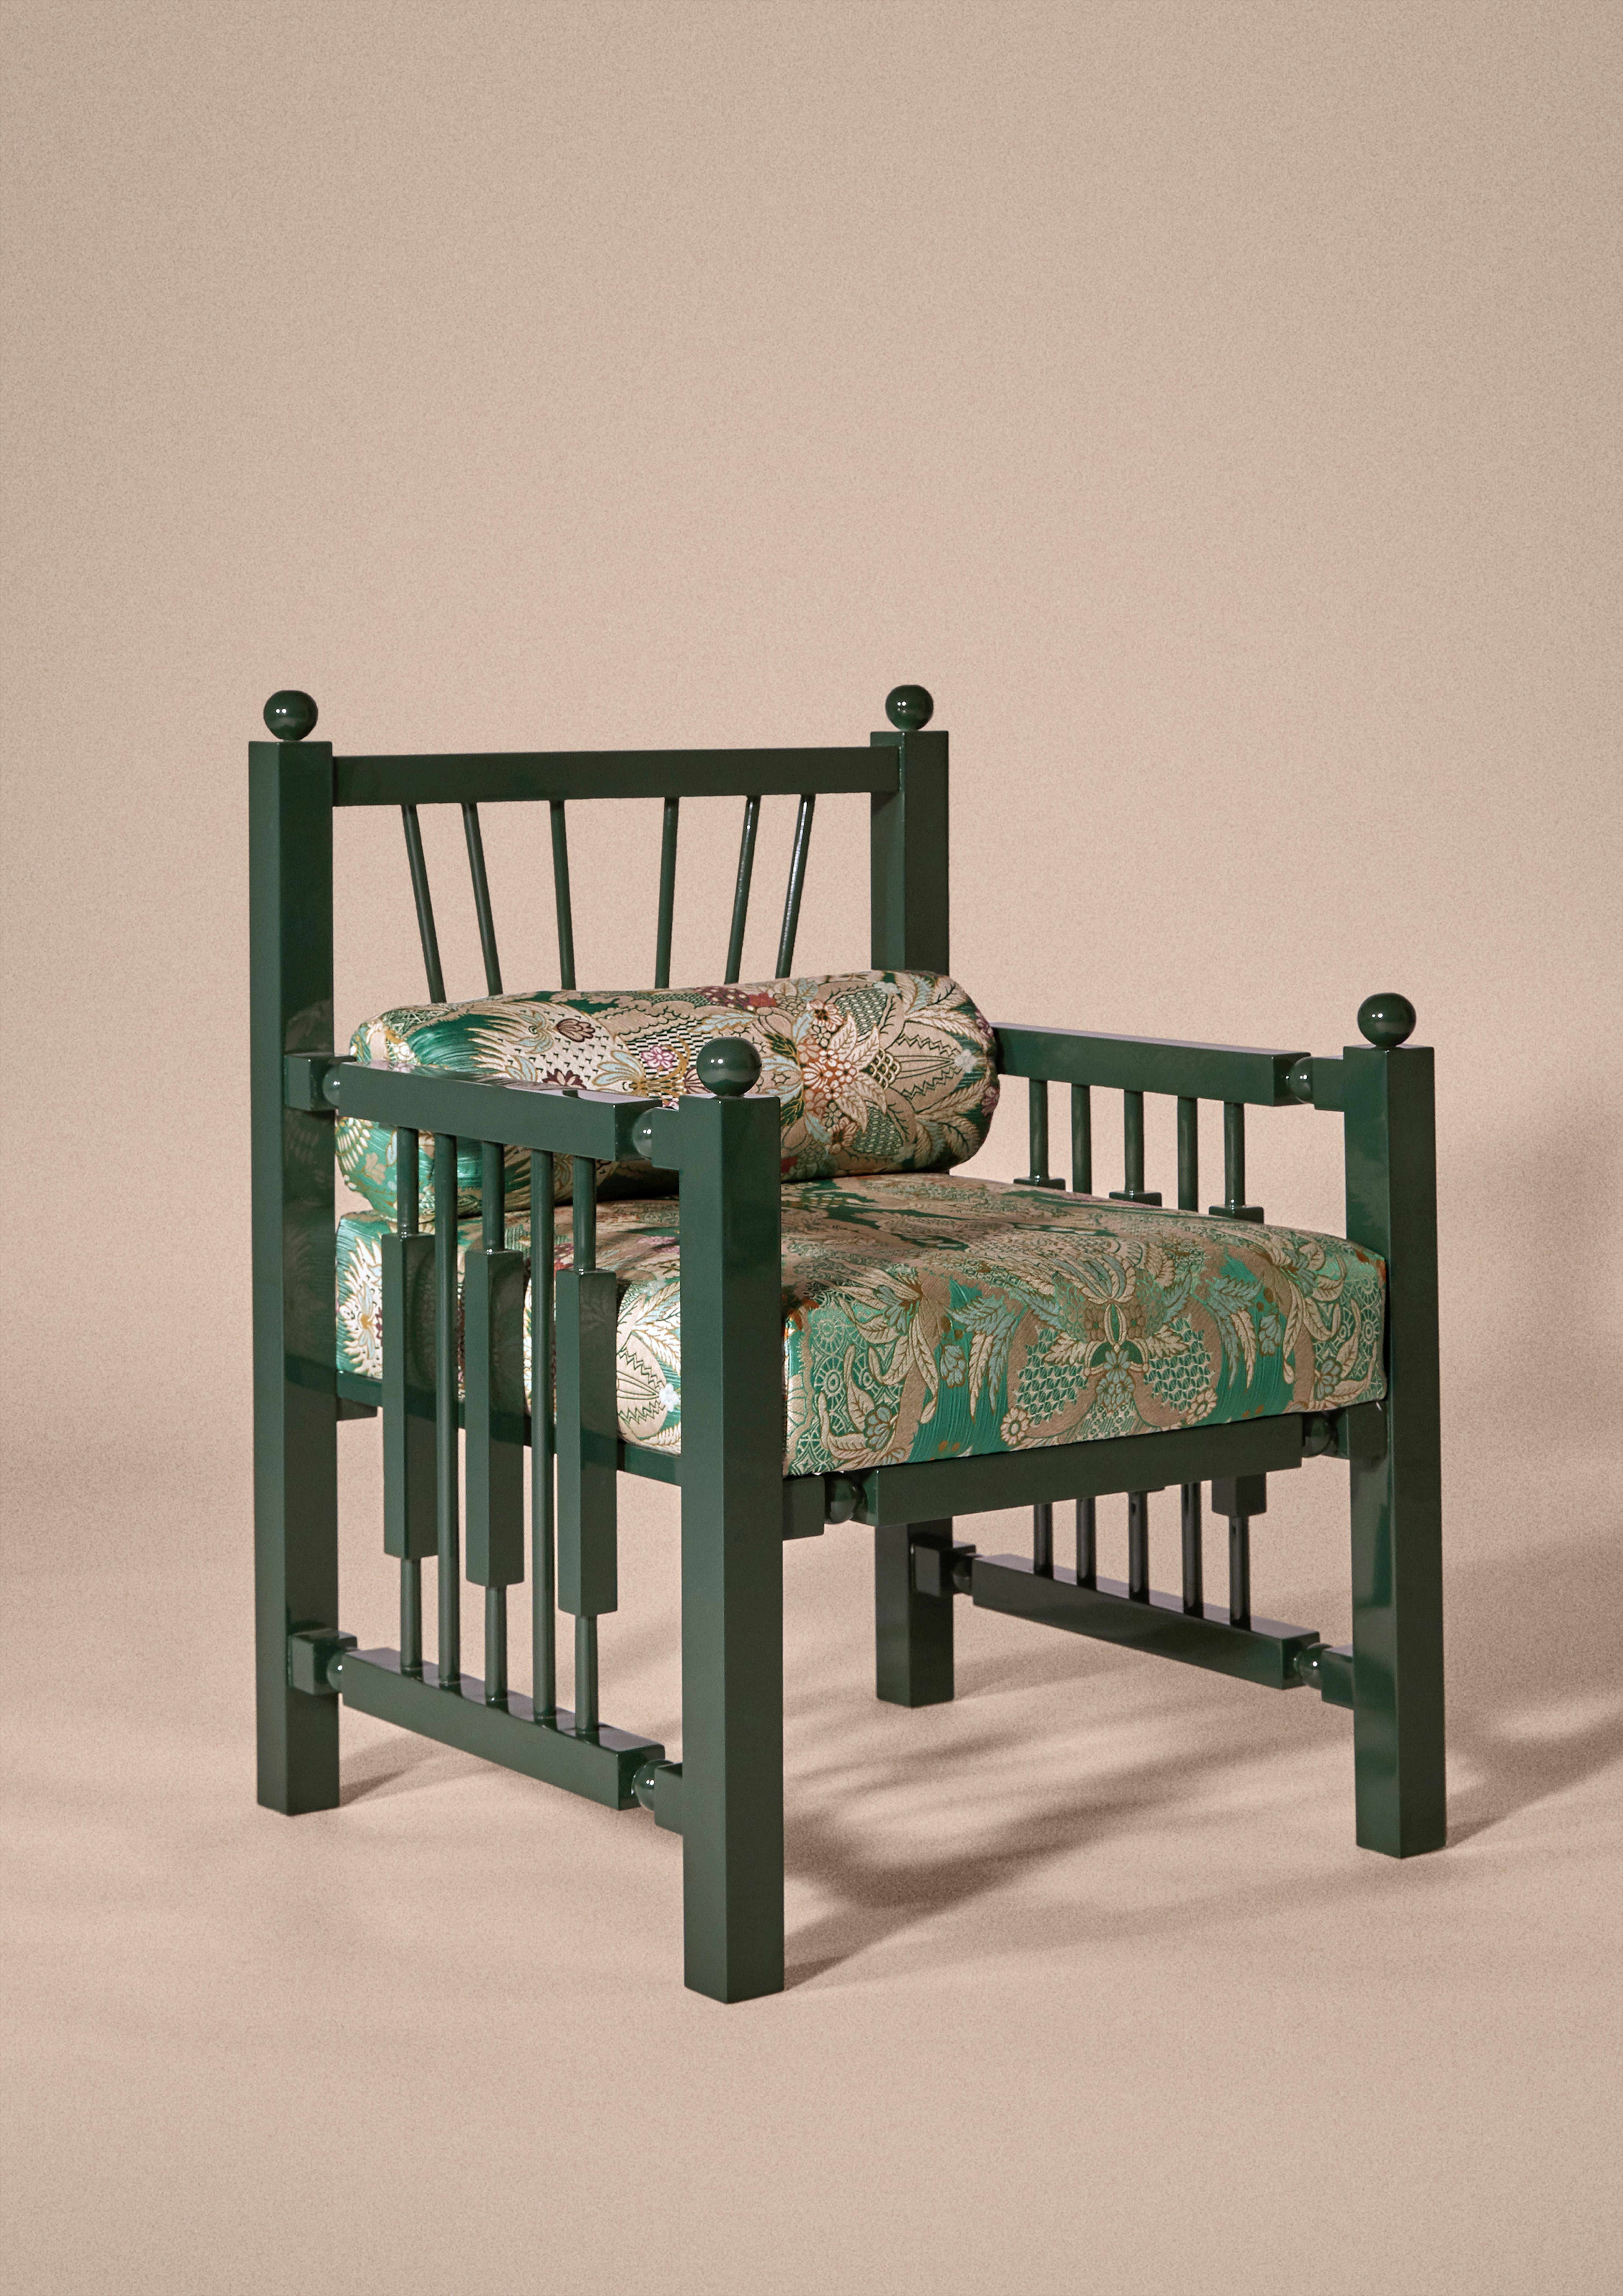 Fauteuils en bois laqué ultra brillant inspirés des chaises indiennes classiques du 19ème siècle, conçus par Laura Gonzalez. Artisanat portugais et tissu 